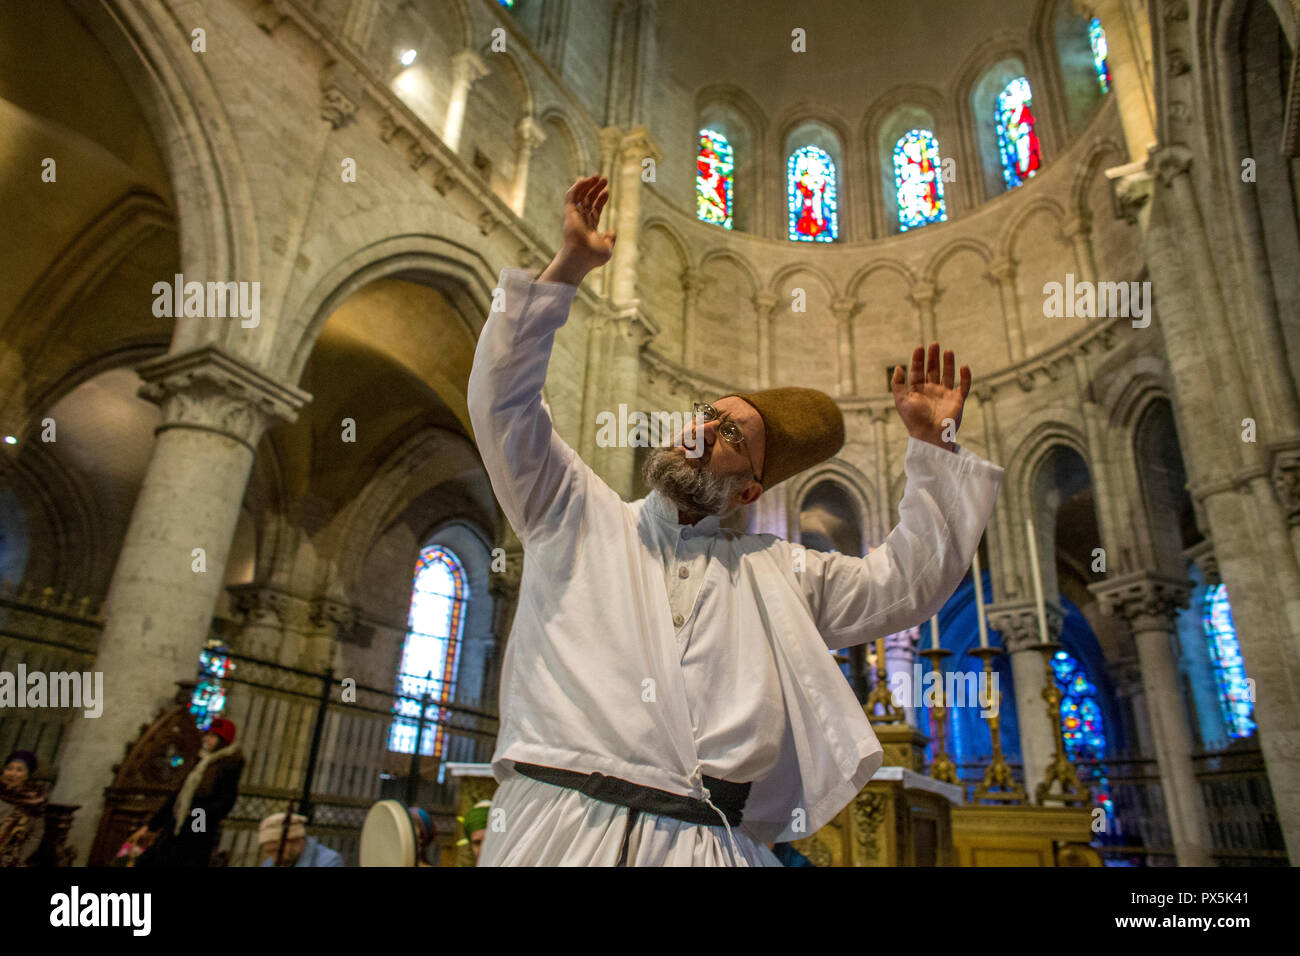 Mariage musulman Soufi dans l'église catholique St Nicolas, Blois, France. Derviche tourneur. Banque D'Images